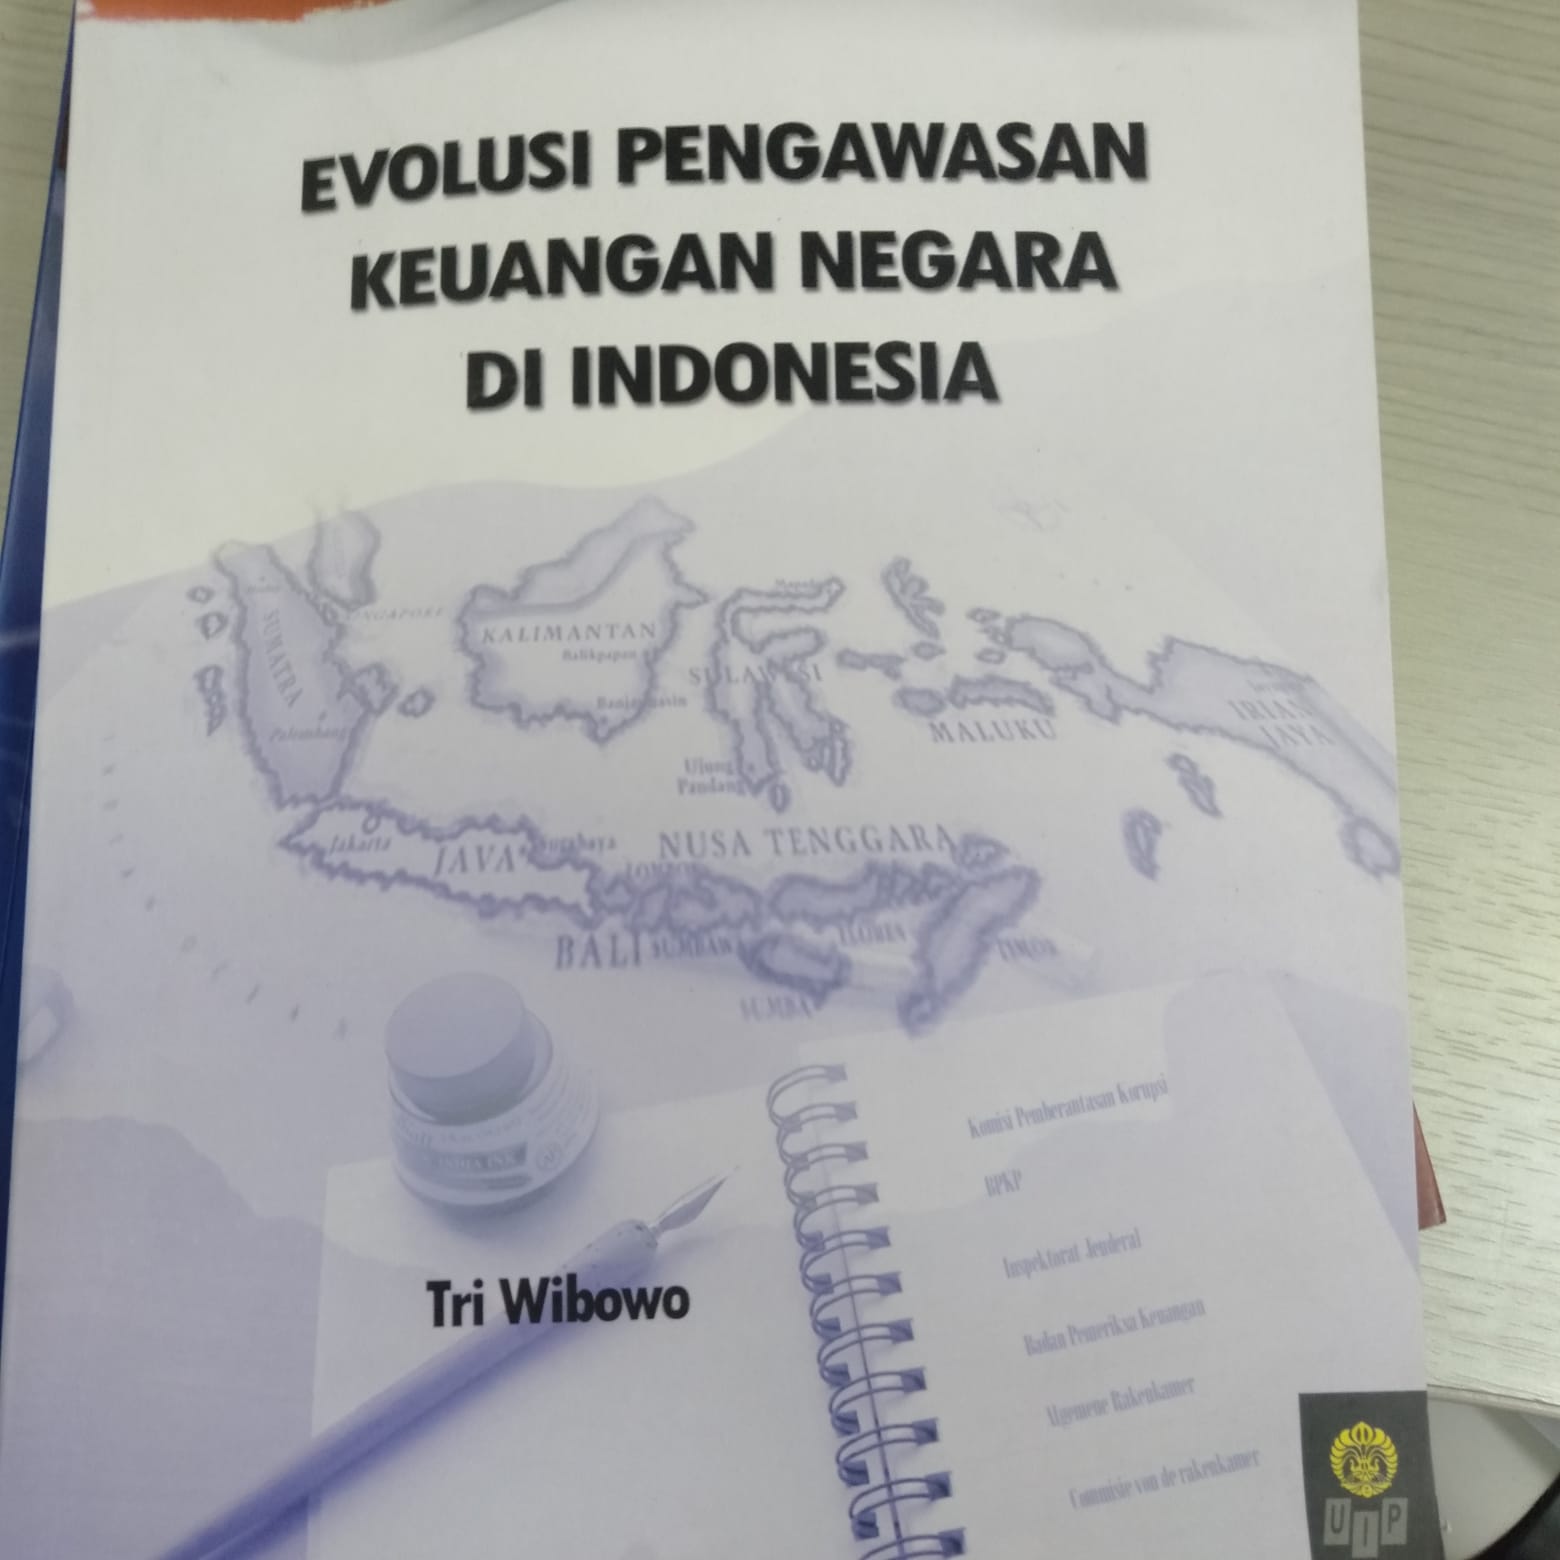 Evolusi Pengawasan Keuangan Negara di Indonesia